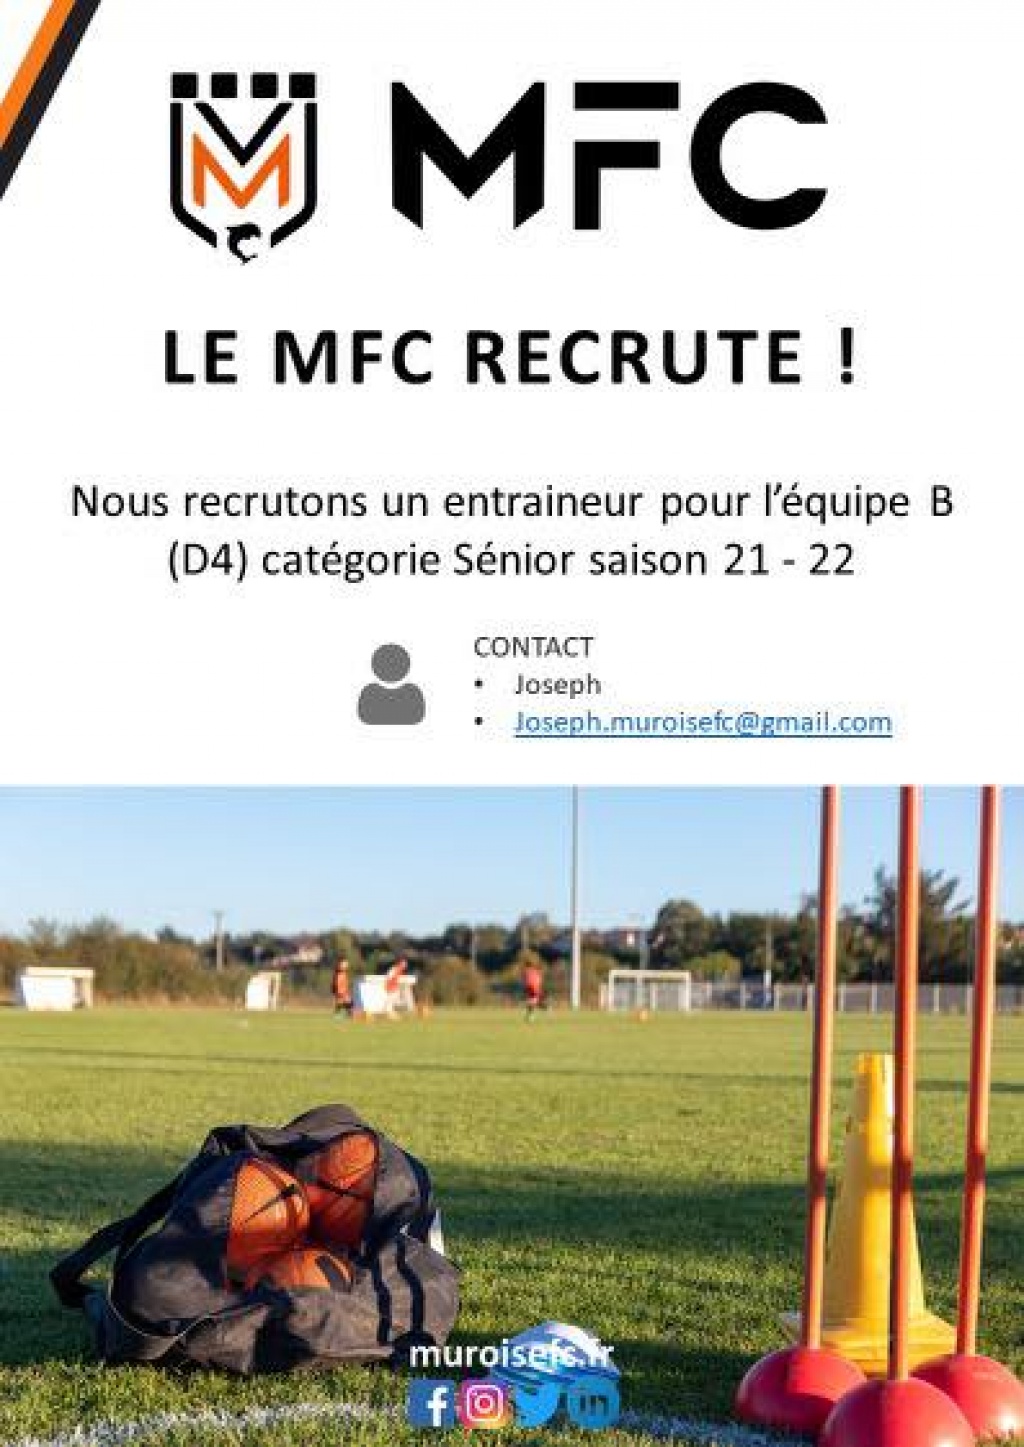 Muroise Football Club recherche un entraineur pour la catégorie Seniors Masculin B (D4)